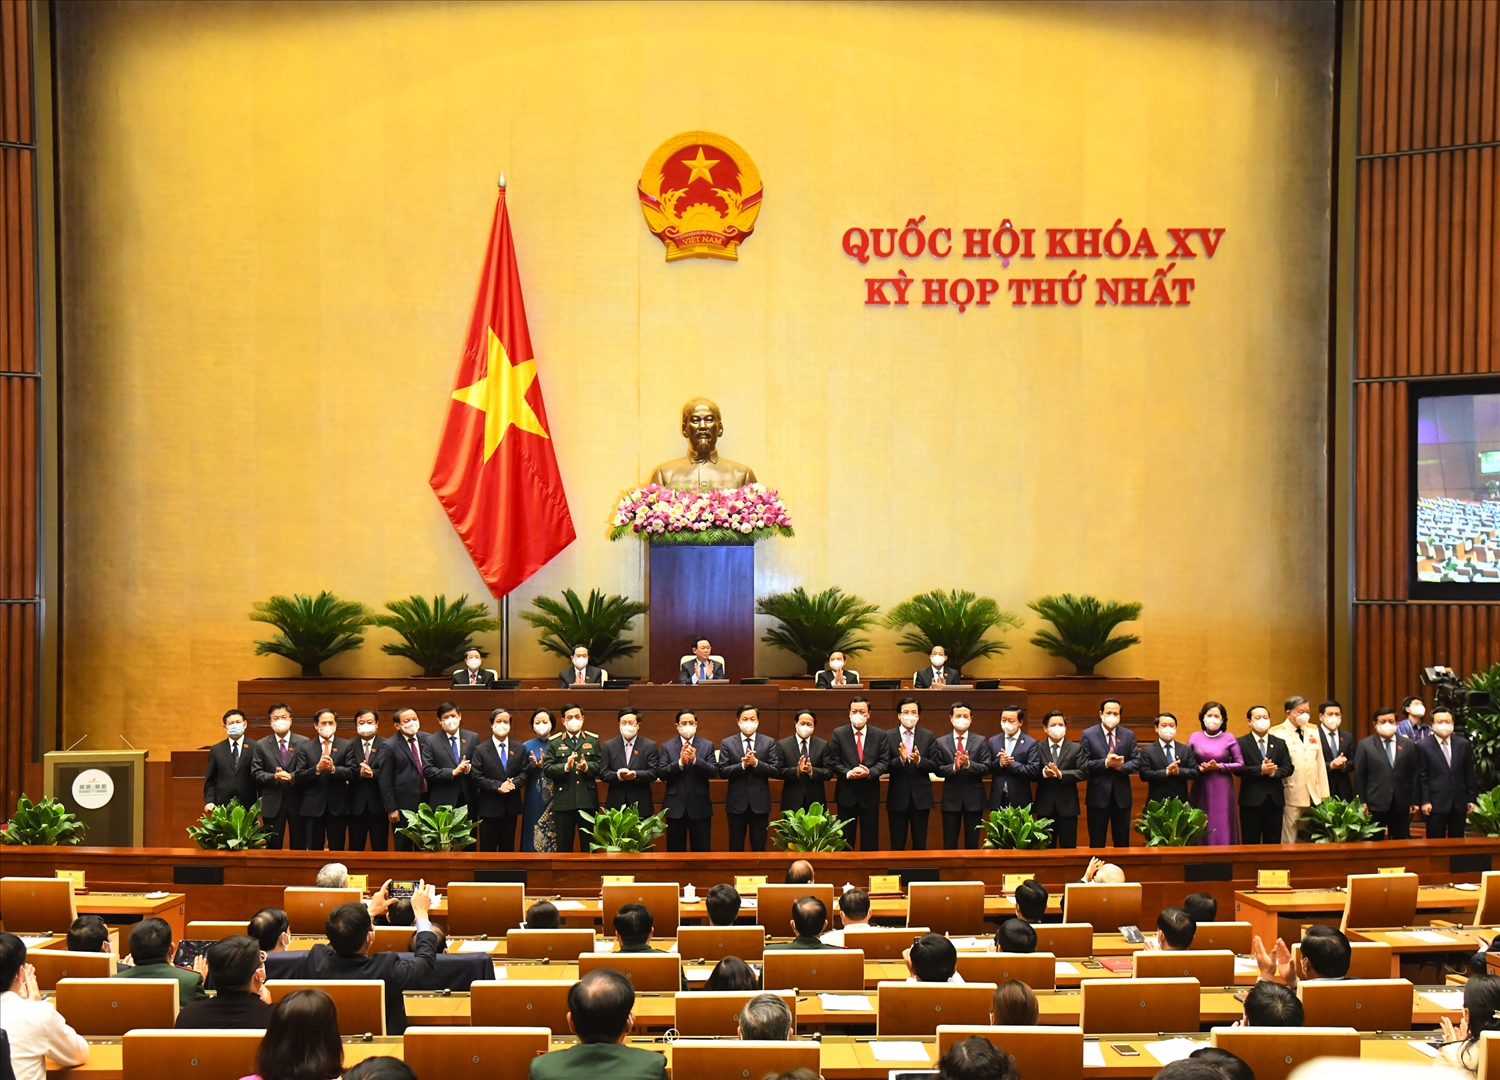 Thủ tướng Chính phủ Phạm Minh Chính, Phó Thủ tướng và các thành viên Chính phủ ra mắt Quốc hội